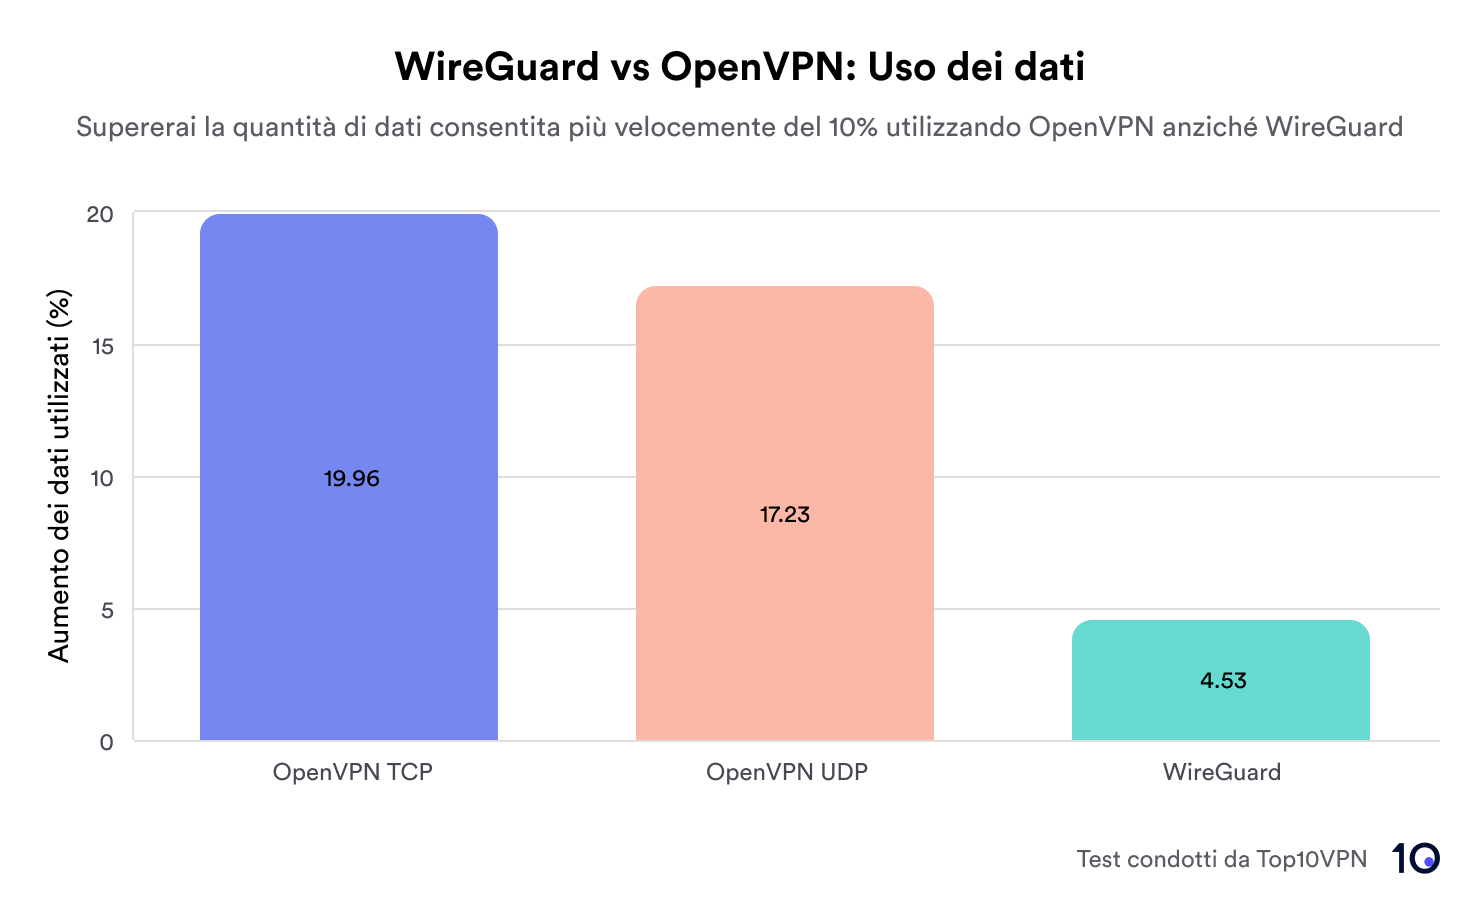 Grafico a barre che mostra il consumo di dati di OpenVPN TCP (+19,96%), OpenVPN UDP (+17,23%) e WireGuard (+4,53%)